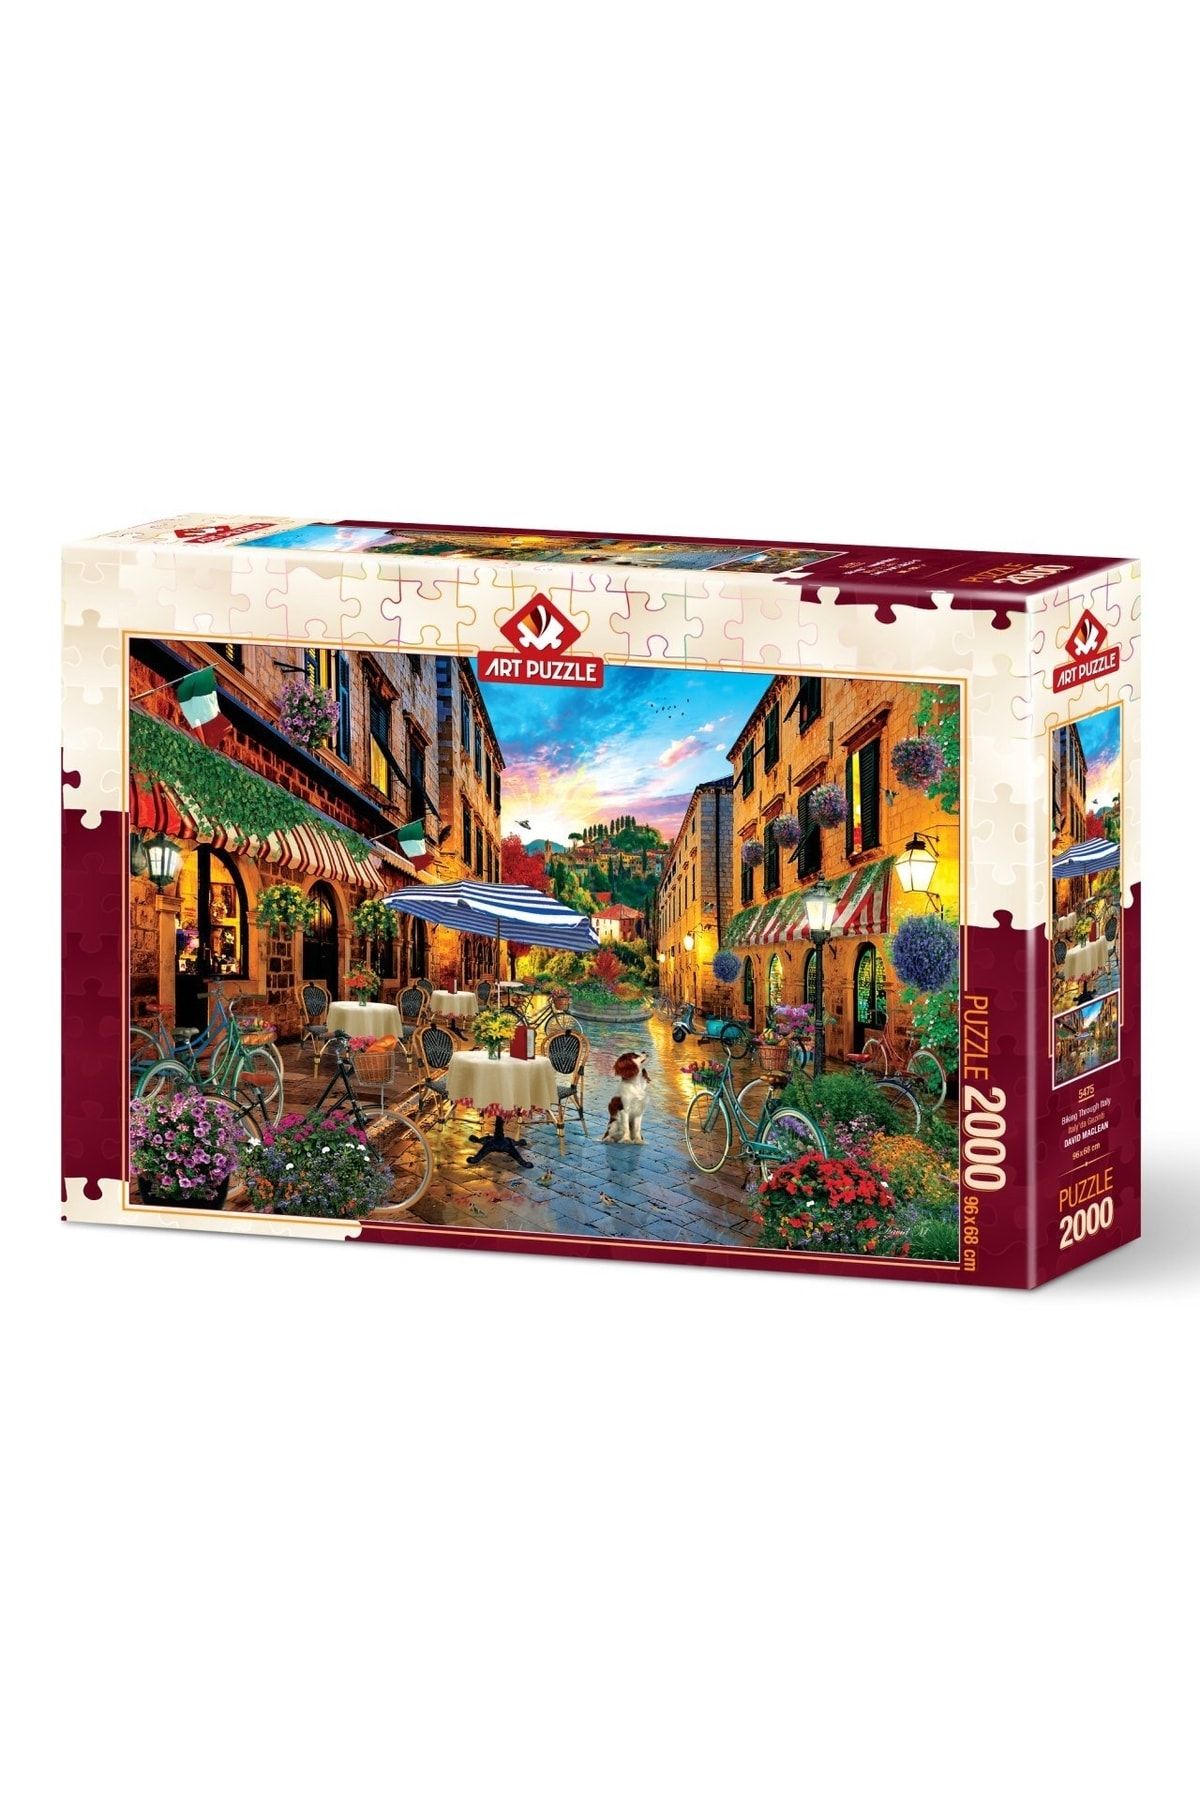 Doğan Oyuncak Dünyası Art Puzzle Italya'da Gezinti 2000 Parça Puzzle 5475 - Puzzle Seti - Yapboz - Yap-boz Puzzle